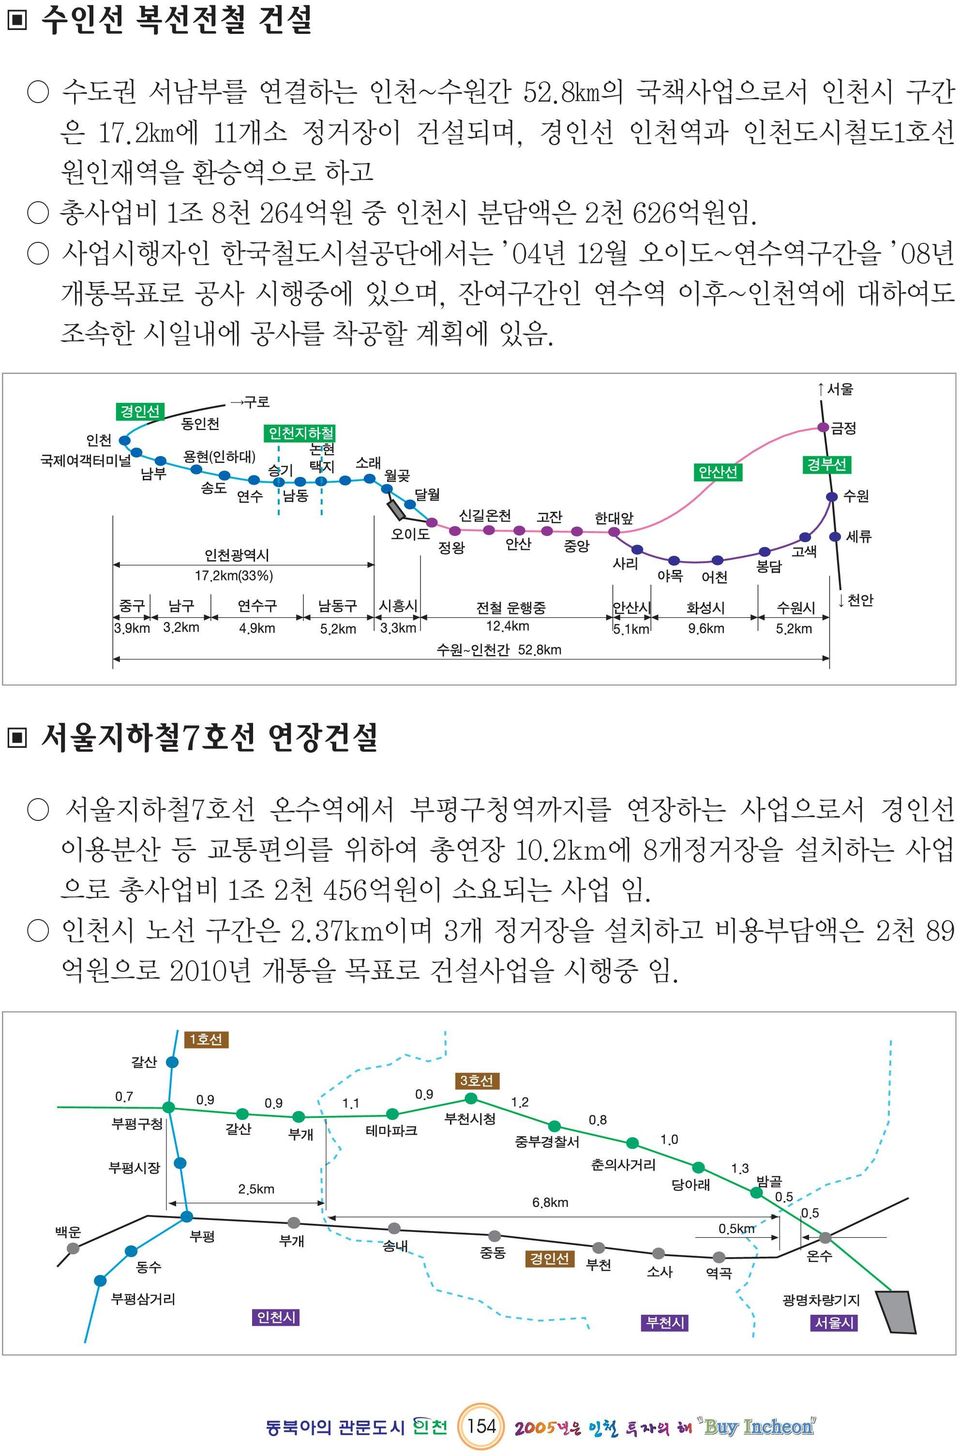 사업시행자인 한국철도시설공단에서는 04년 12월 오이도~연수역구간을 08년 개통목표로 공사 시행중에 있으며, 잔여구간인 연수역 이후~인천역에 대하여도 조속한 시일내에 공사를 착공할 계획에 있음.